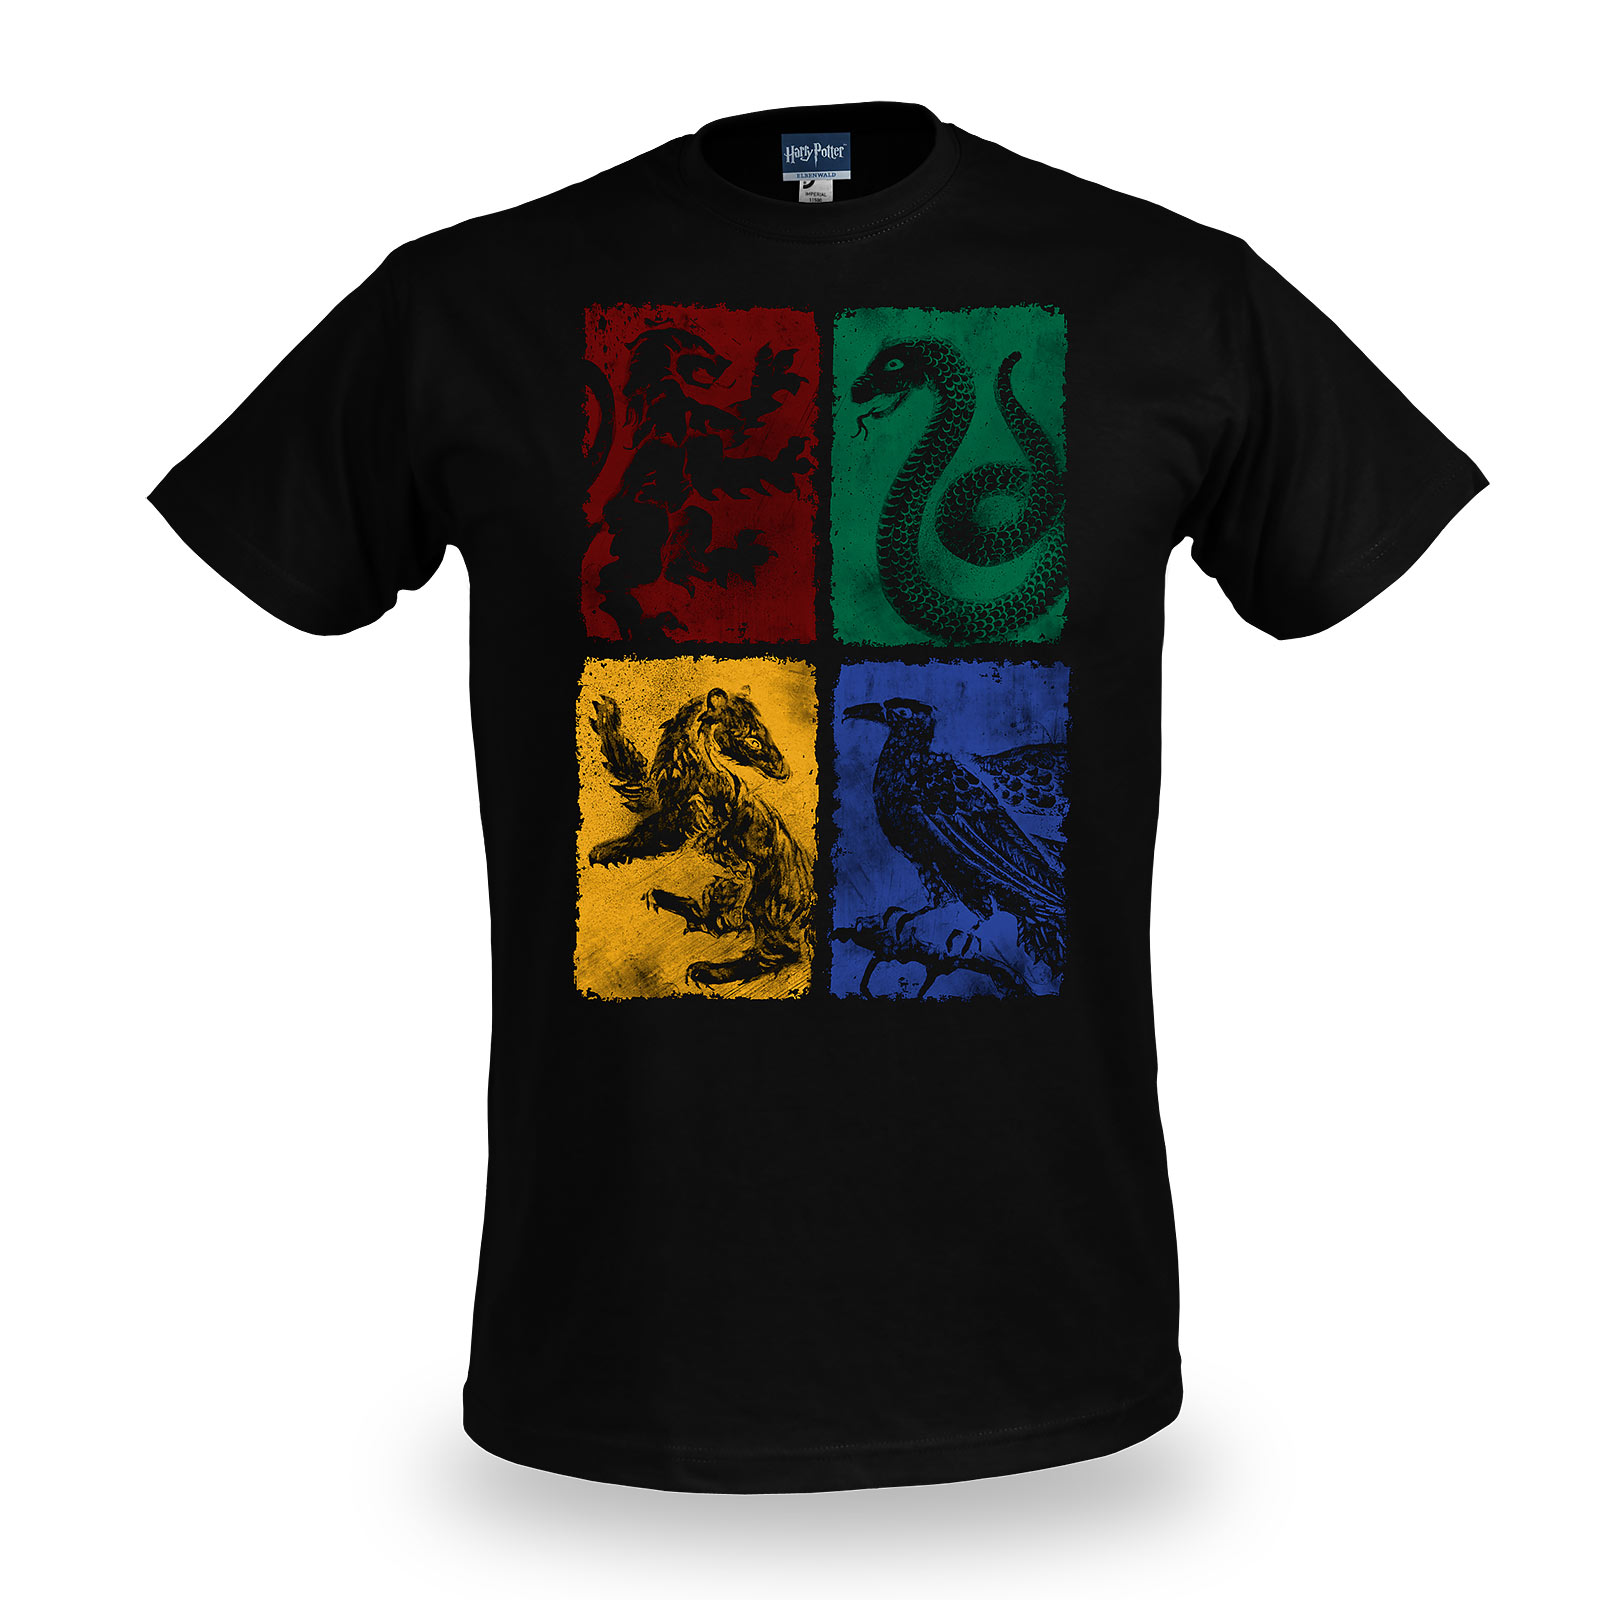 Harry Potter - Hogwarts Crest distressed t-shirt black